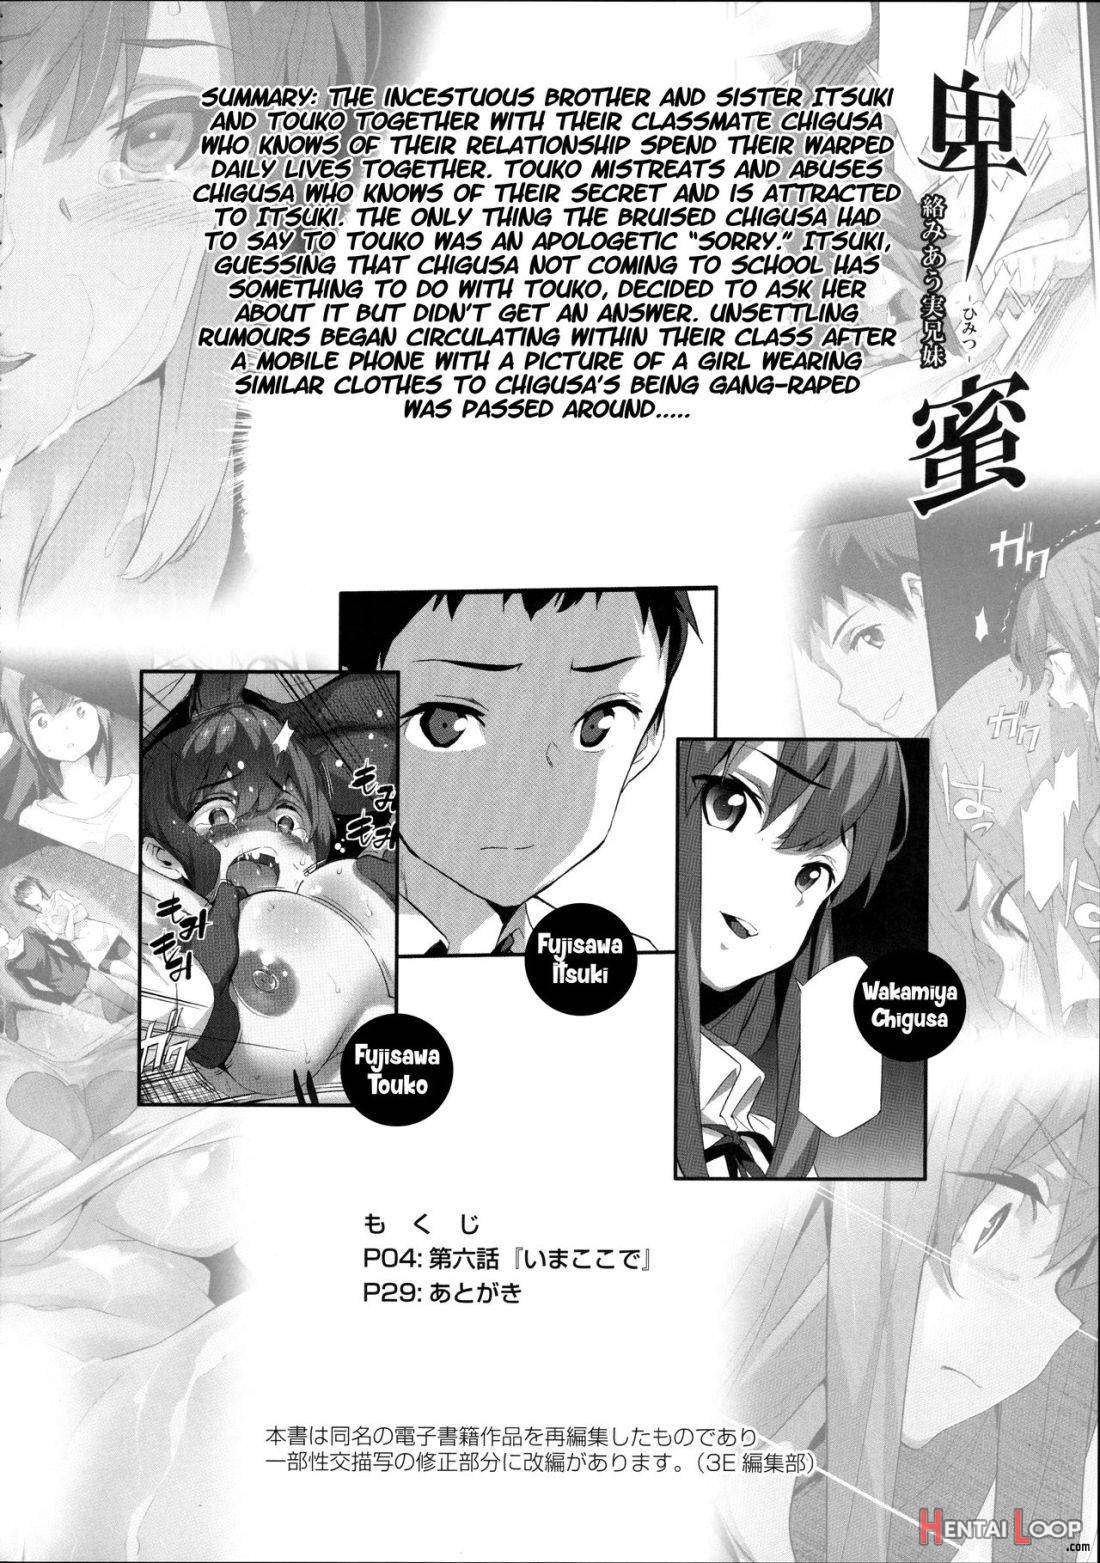 Himitsu 6 “ima Koko De” page 2